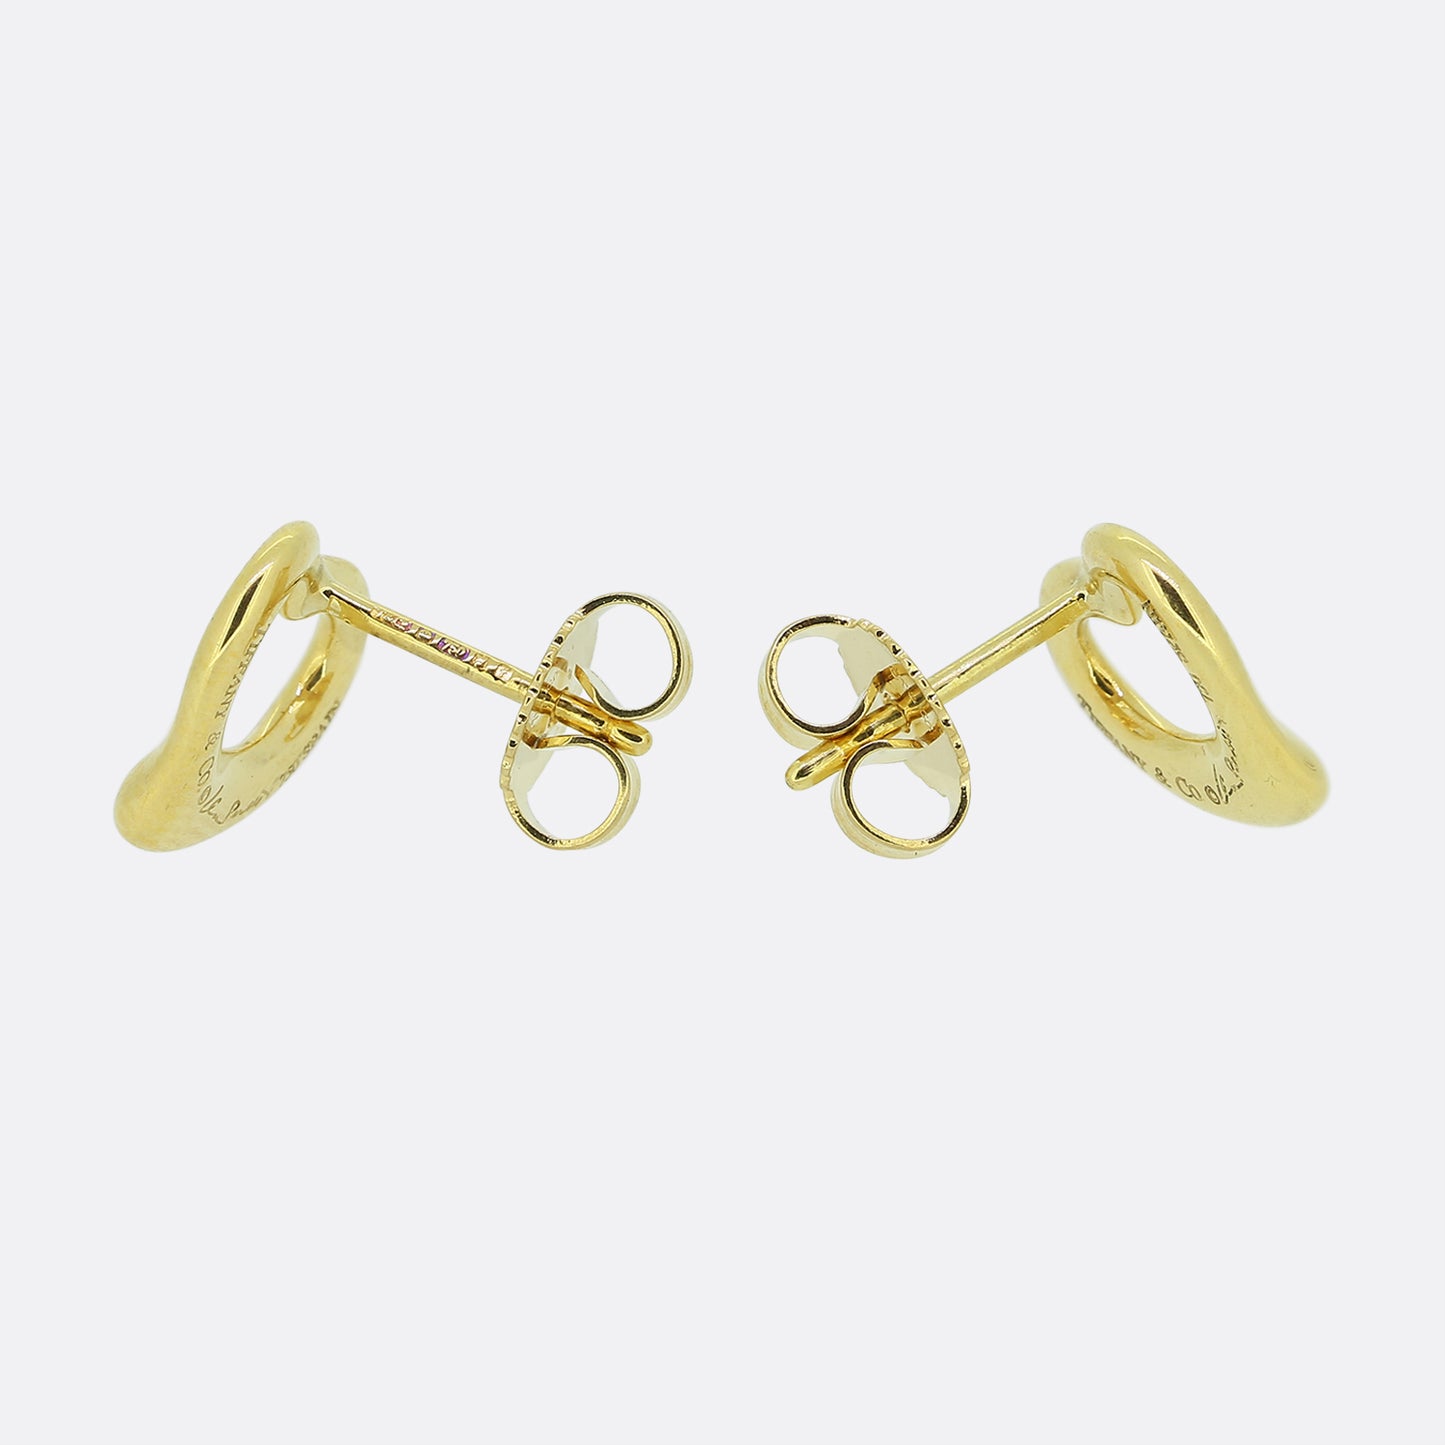 Tiffany & Co. 11mm Open Heart Earrings